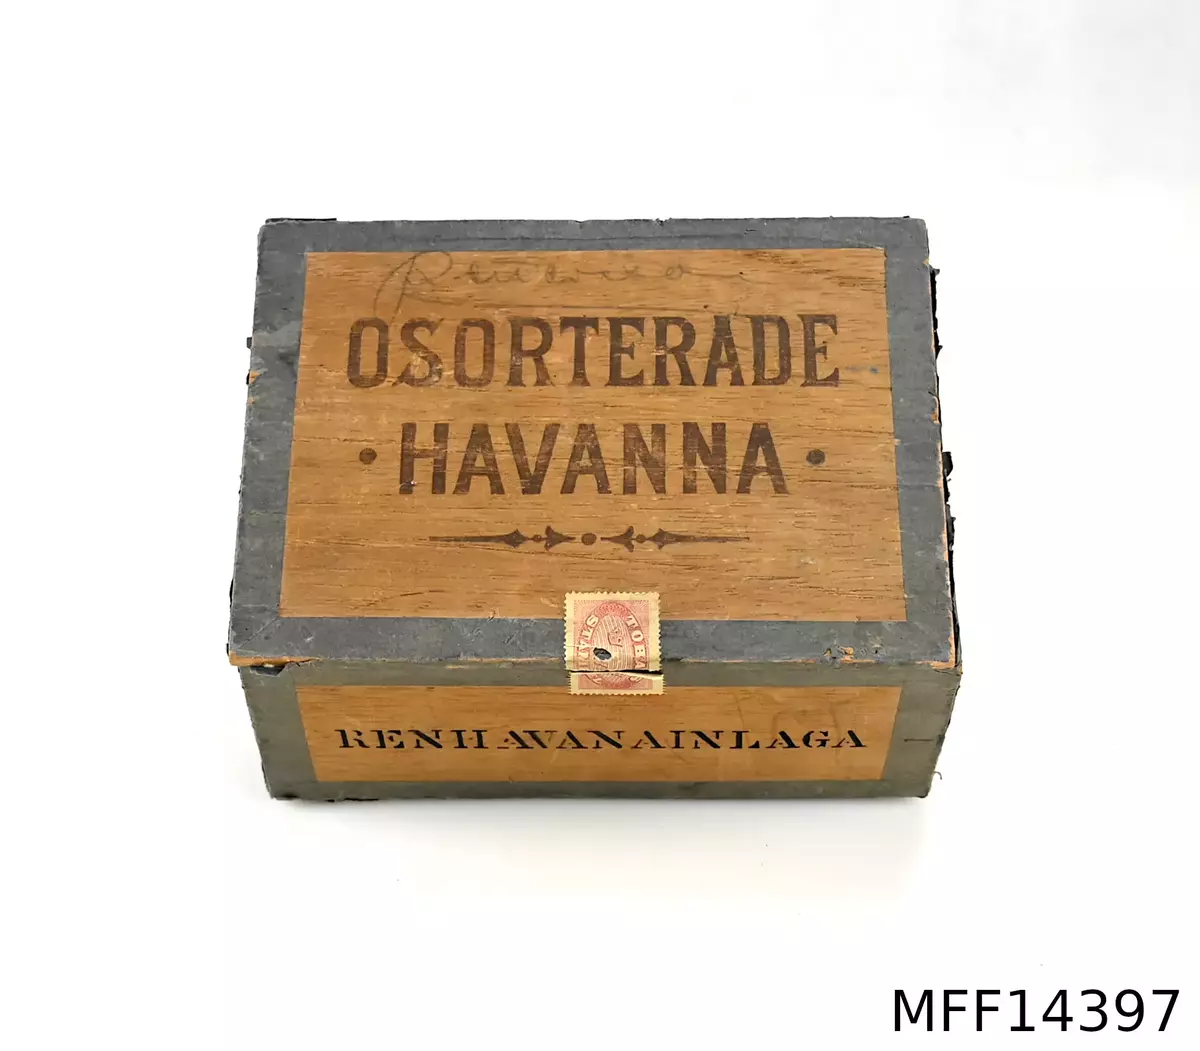 Träask. Osorterade Havanna. Etikett: Tobaksstämpel + tre kronor. Etikett: Havannamagasinet Aktiebolaget Stockholm. Ren Havanna inlaga.